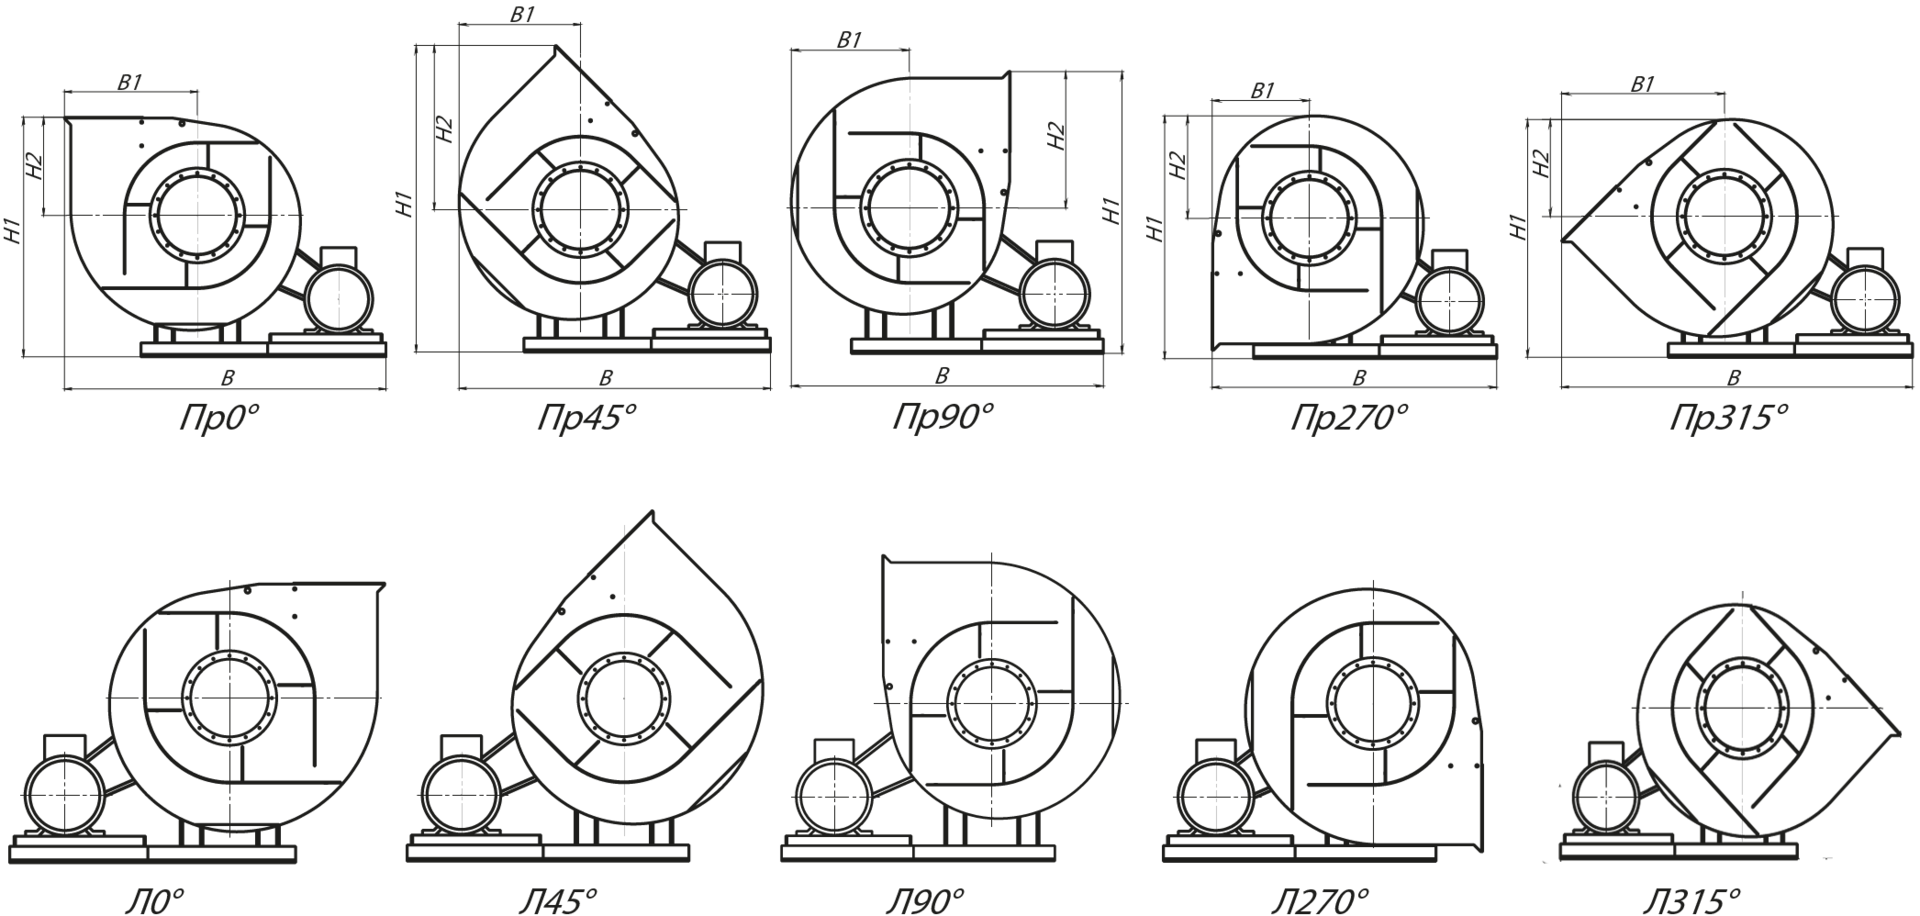 Стандартные углы поворота корпуса вентиляторов ВРП 115-45 правого и левого вращения - схема 5